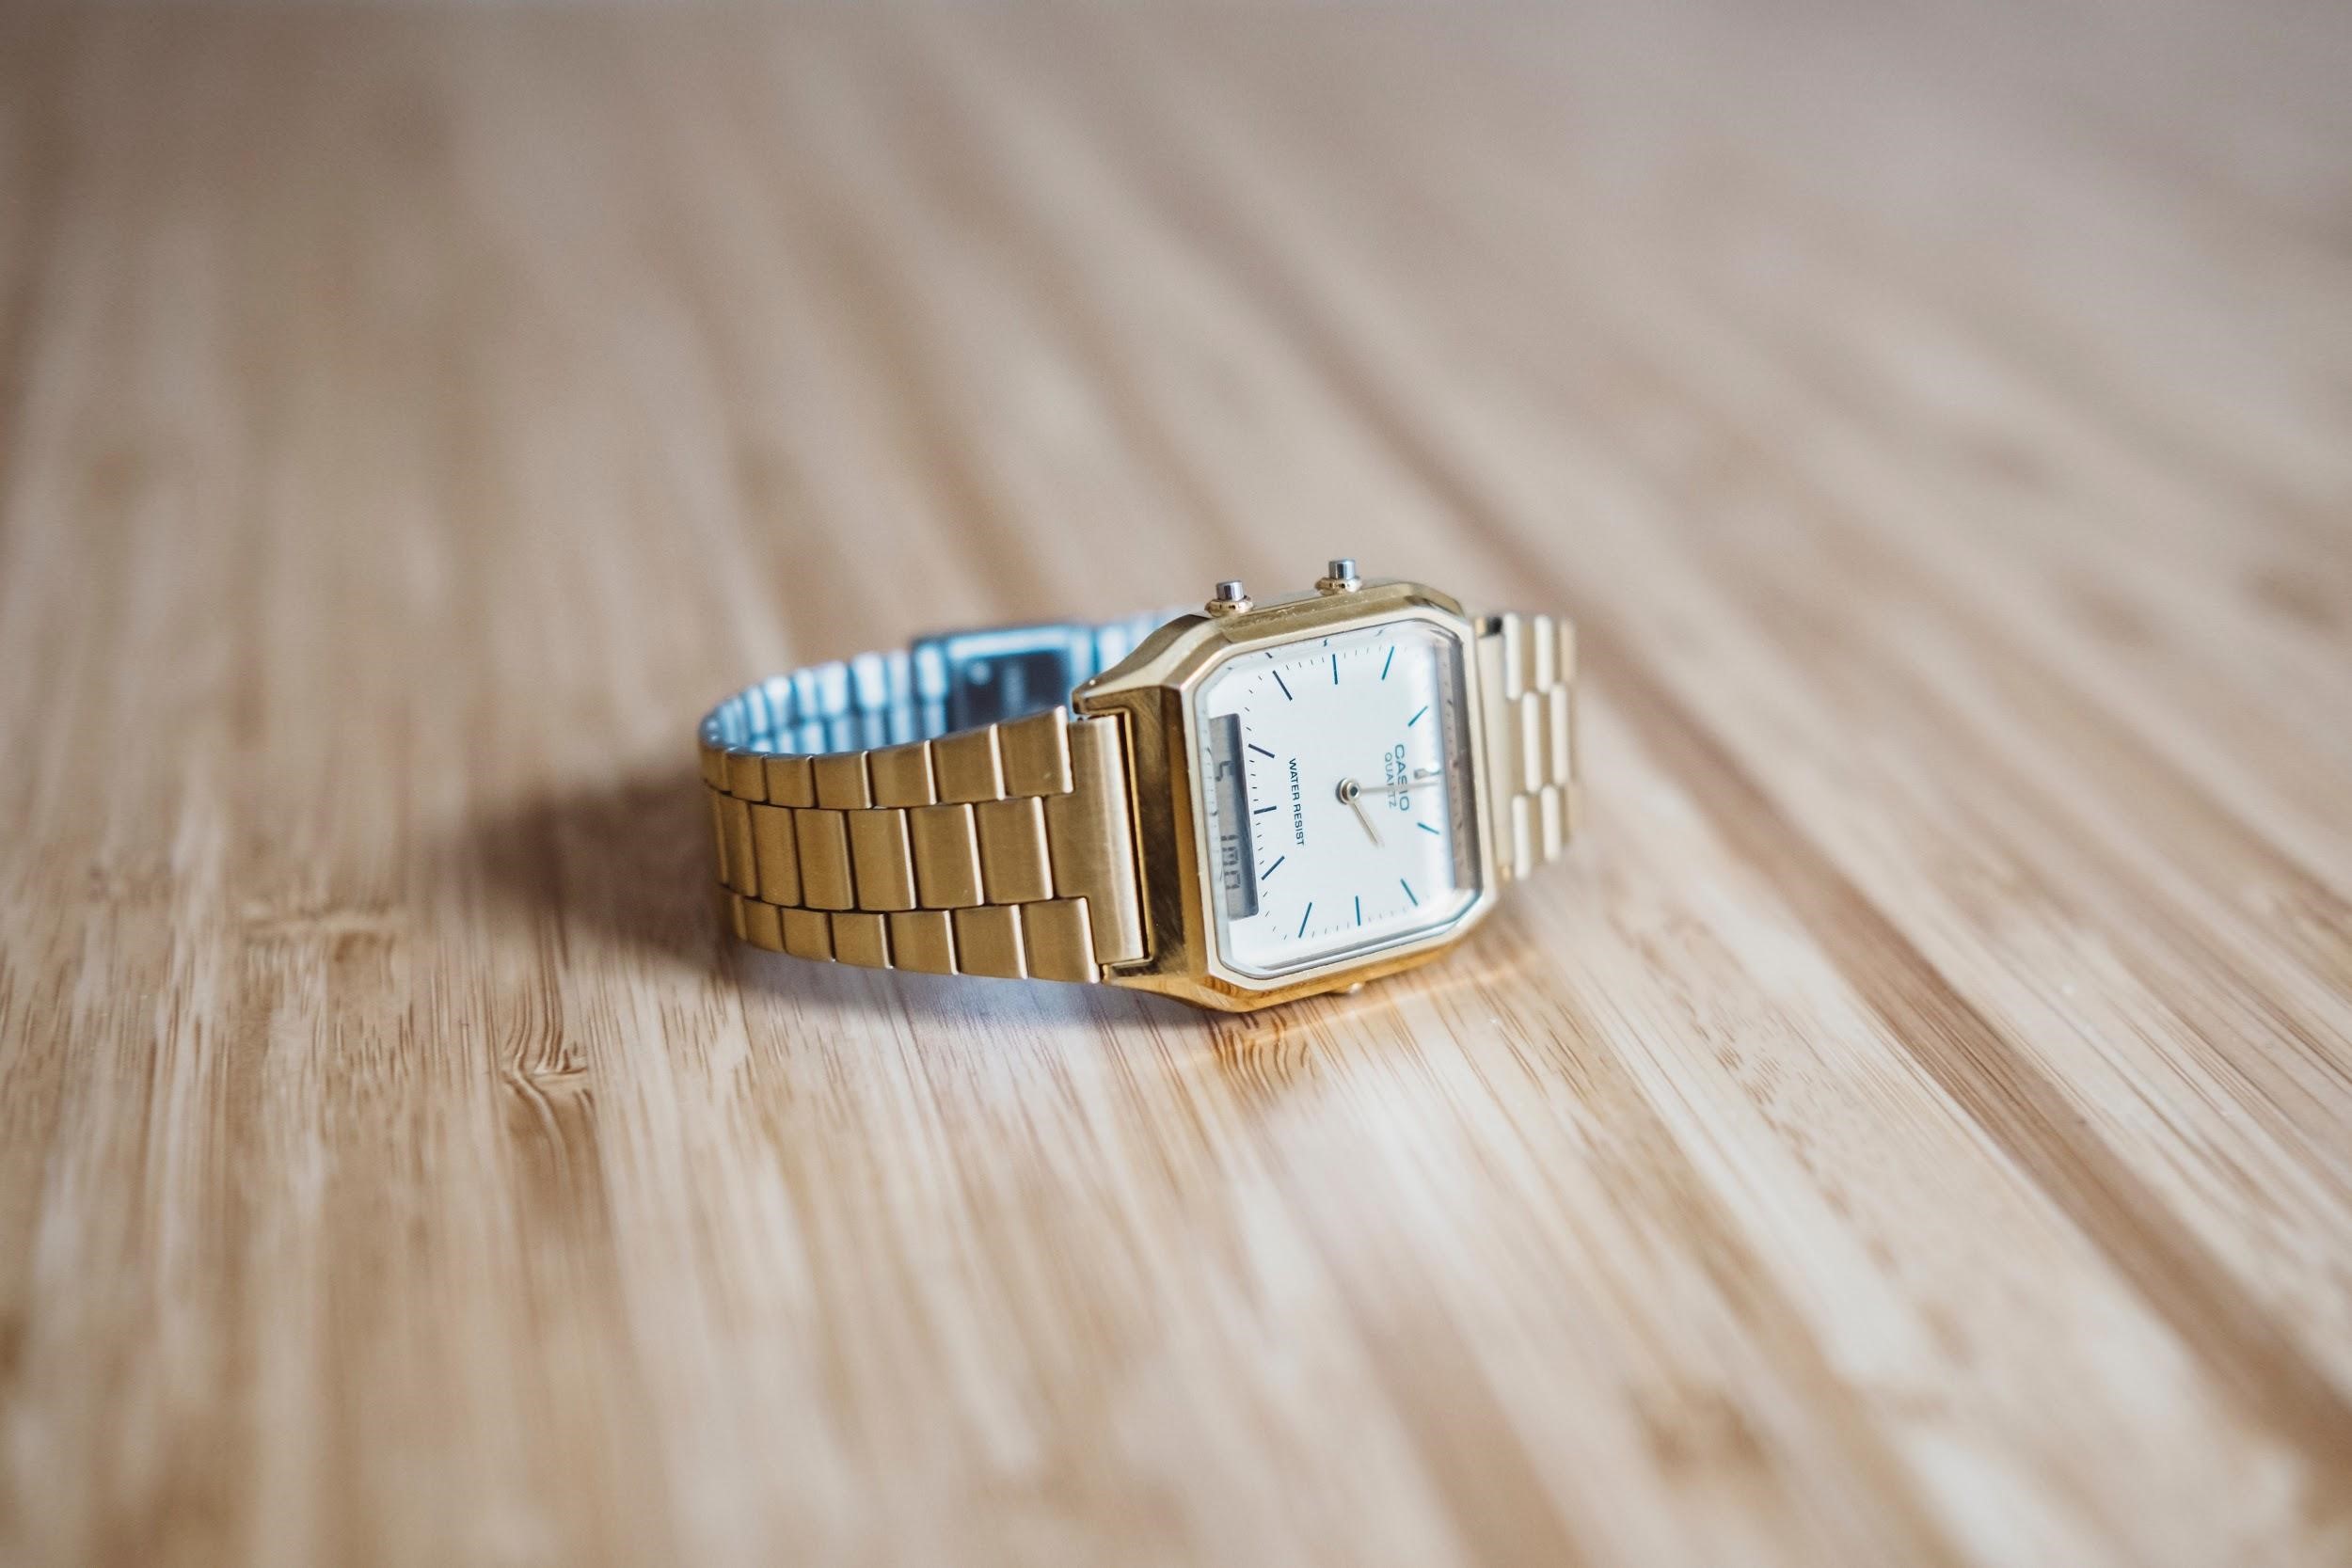 นาฬิกา casio ผู้หญิงราคาไม่เกิน 1,000 ที่ใส่แล้วเก๋แถมยังเท่แบบที่เงินเหลือ